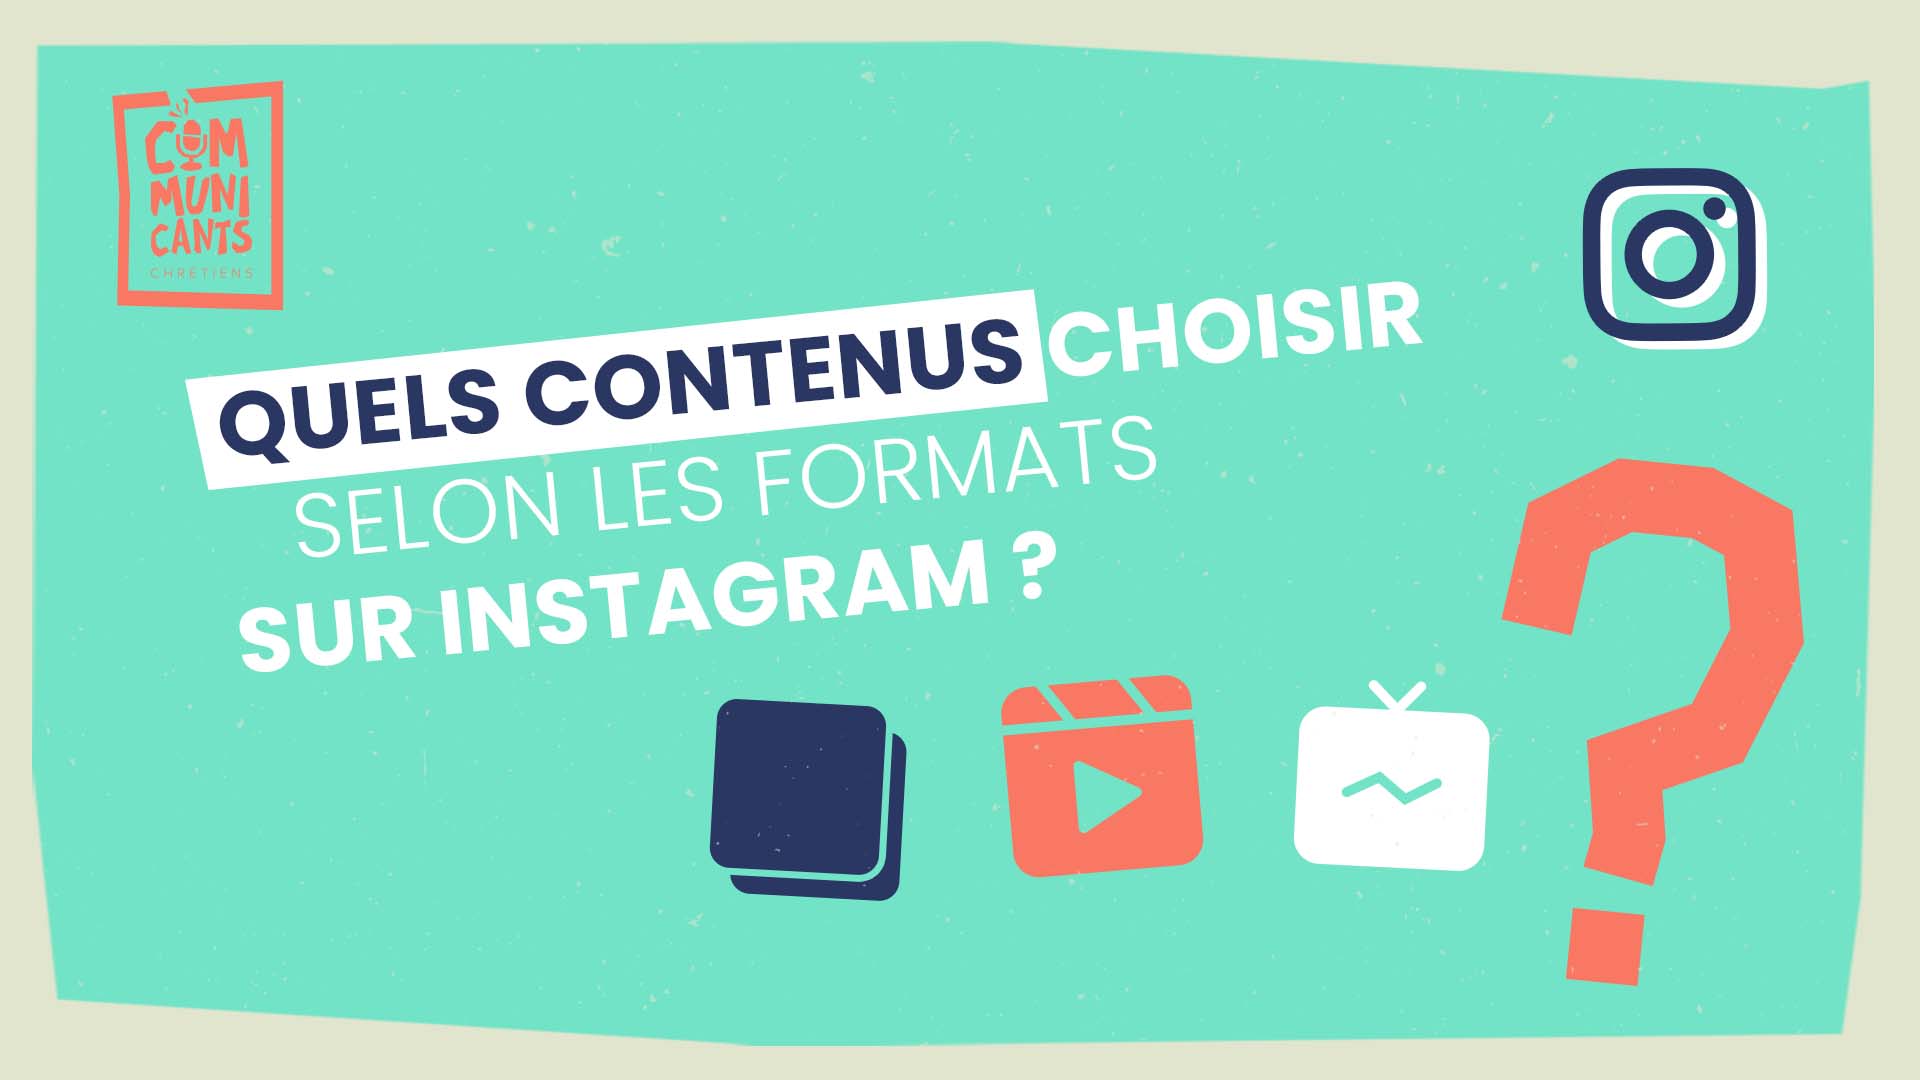 Quels contenus choisir selon les formats sur Instagram ?